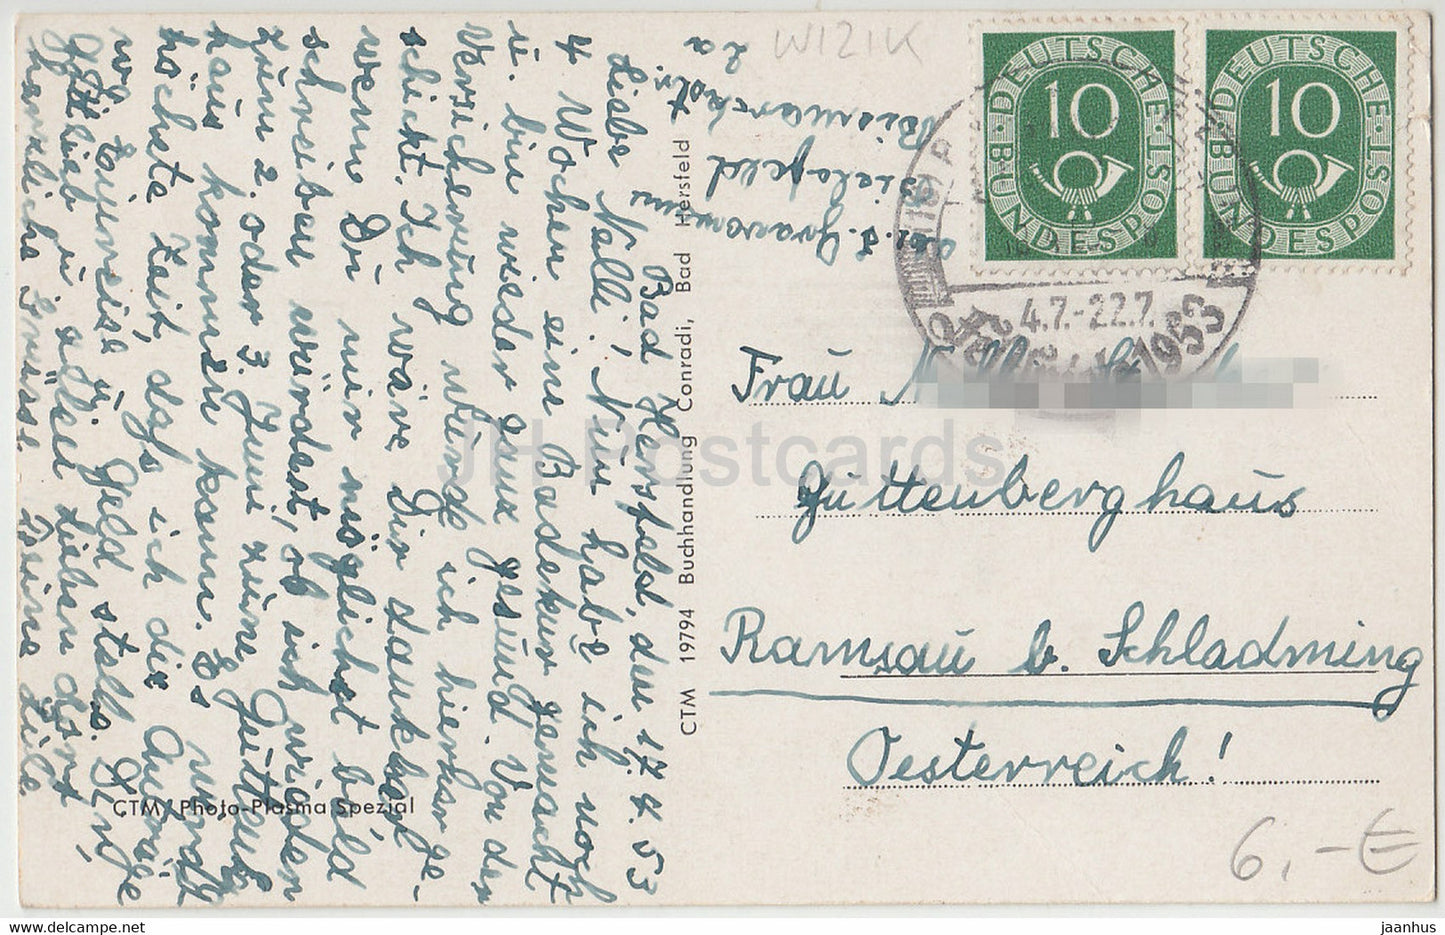 Bad Hersfeld - Rathaus mit Lullusbrunnen - alte Postkarte - 1953 - Deutschland - gebraucht